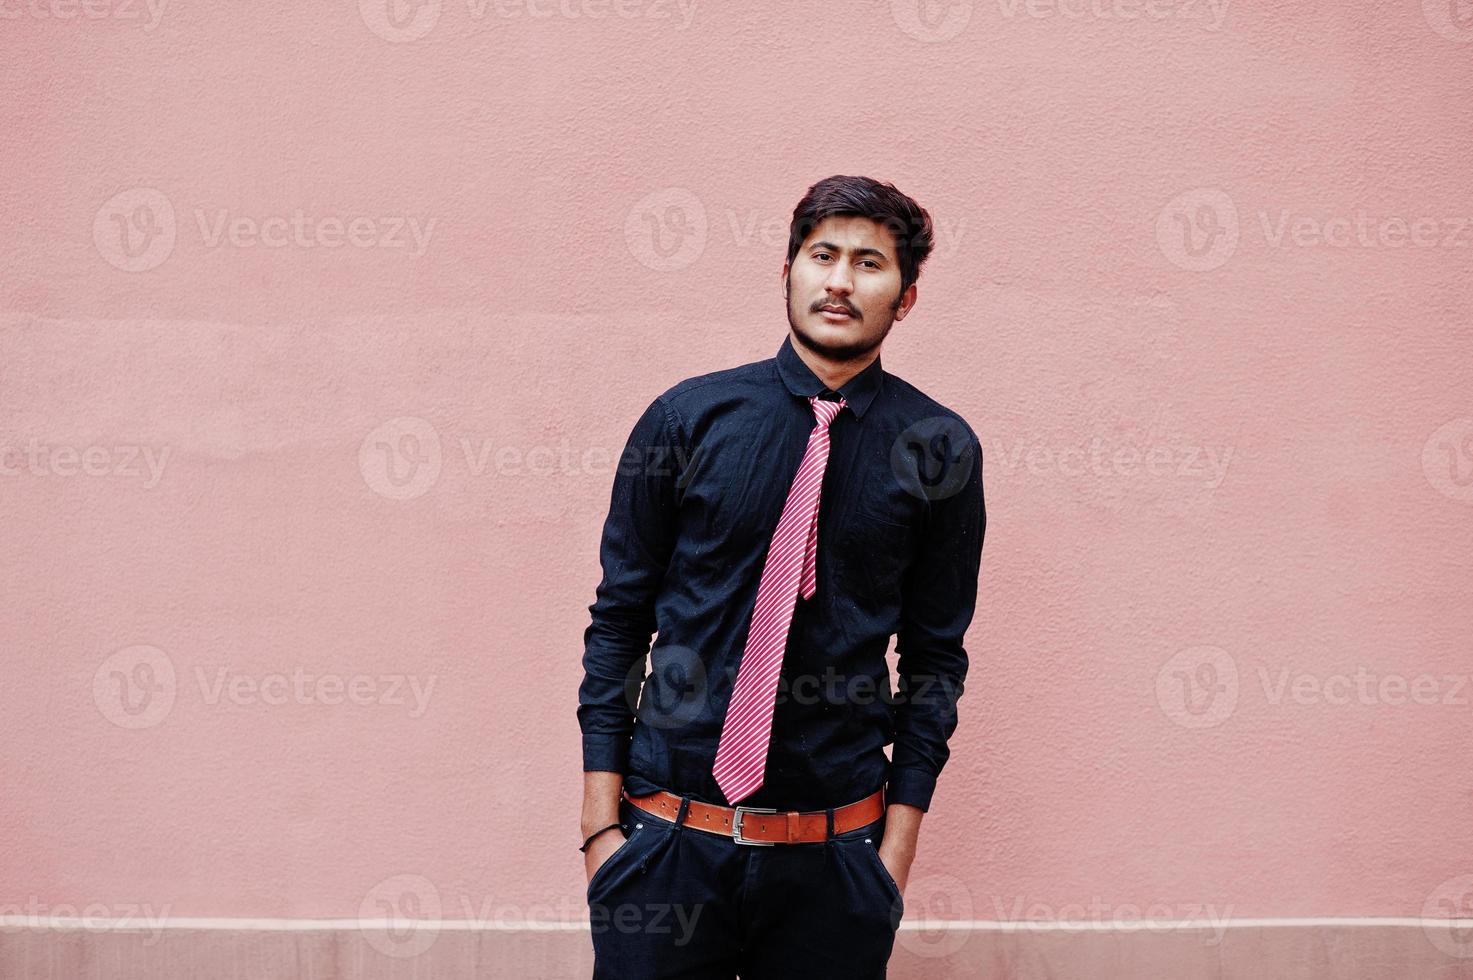 junger indischer mann auf schwarzem hemd und krawatte posierte vor rosa wand. foto